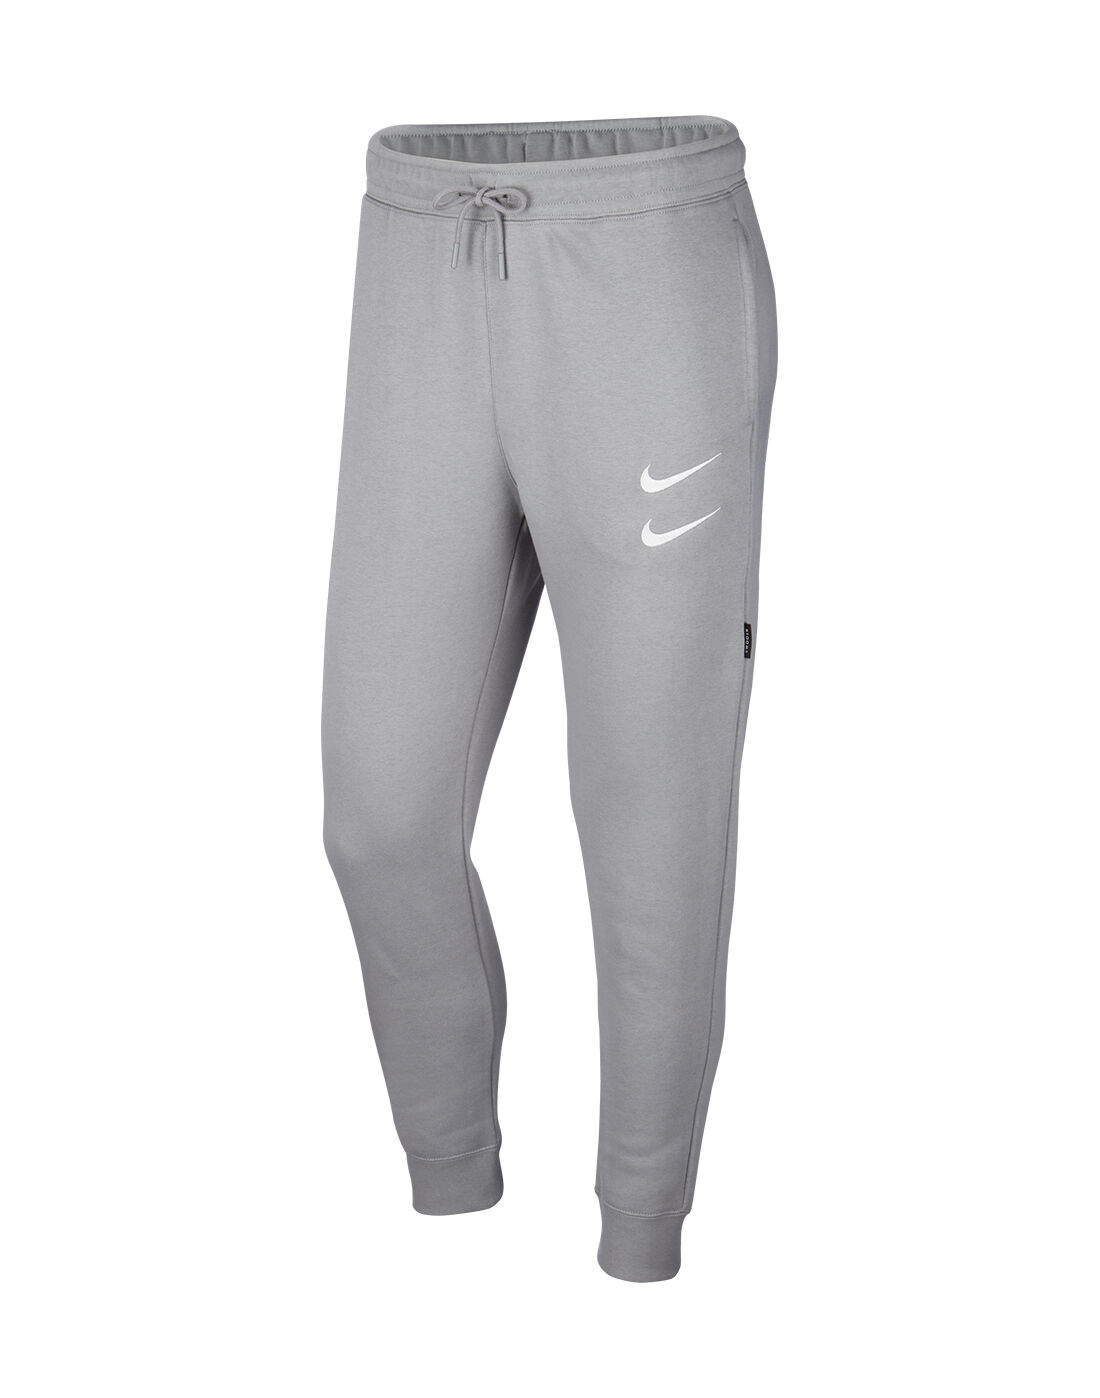 Nike Mens Swoosh Pants - Grey | Life 